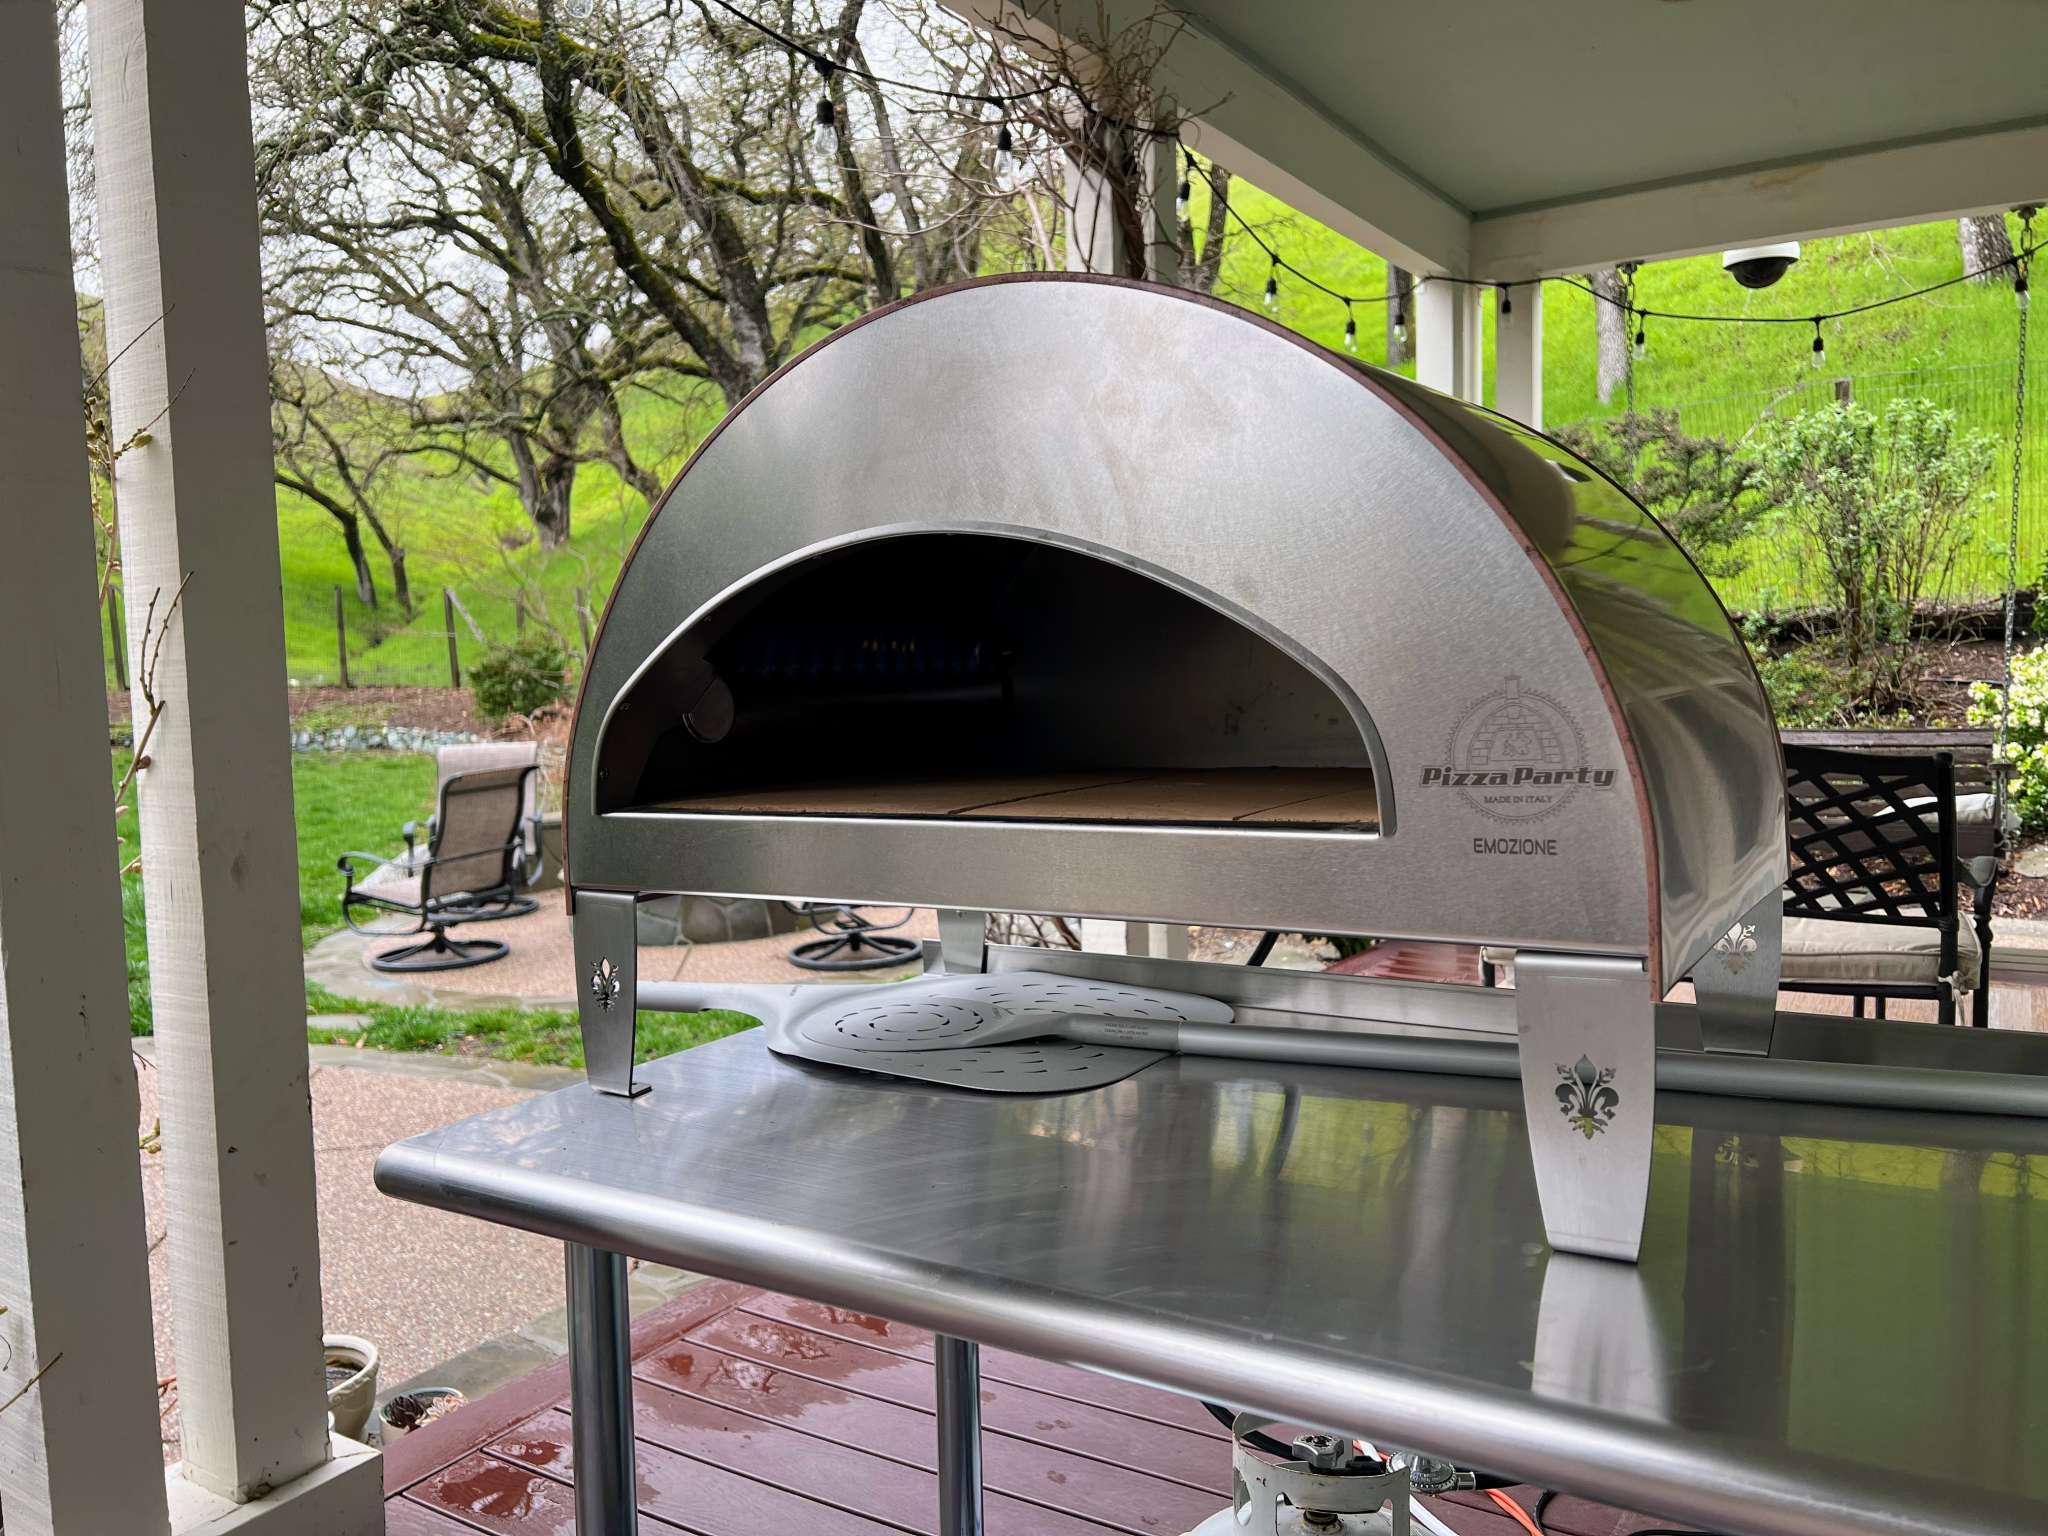 Outdoor gas oven italian pizza oven Pizza Party Emozione